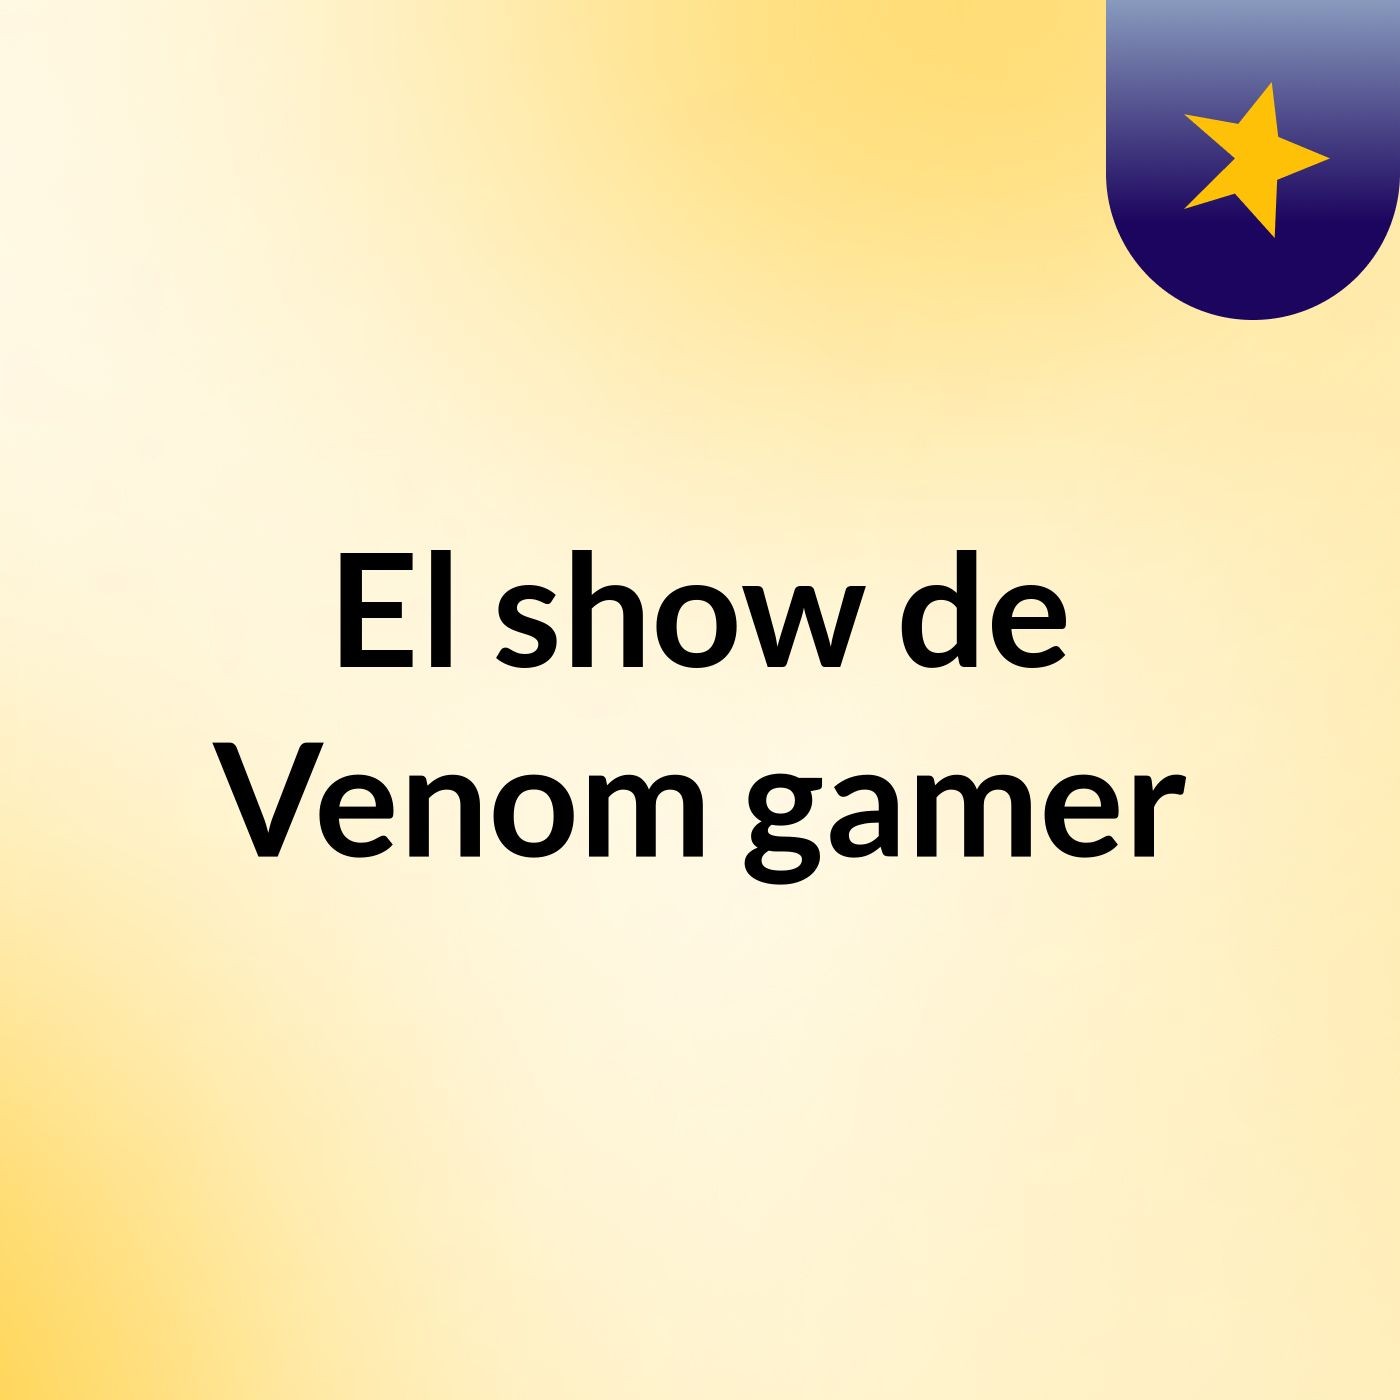 El show de Venom gamer